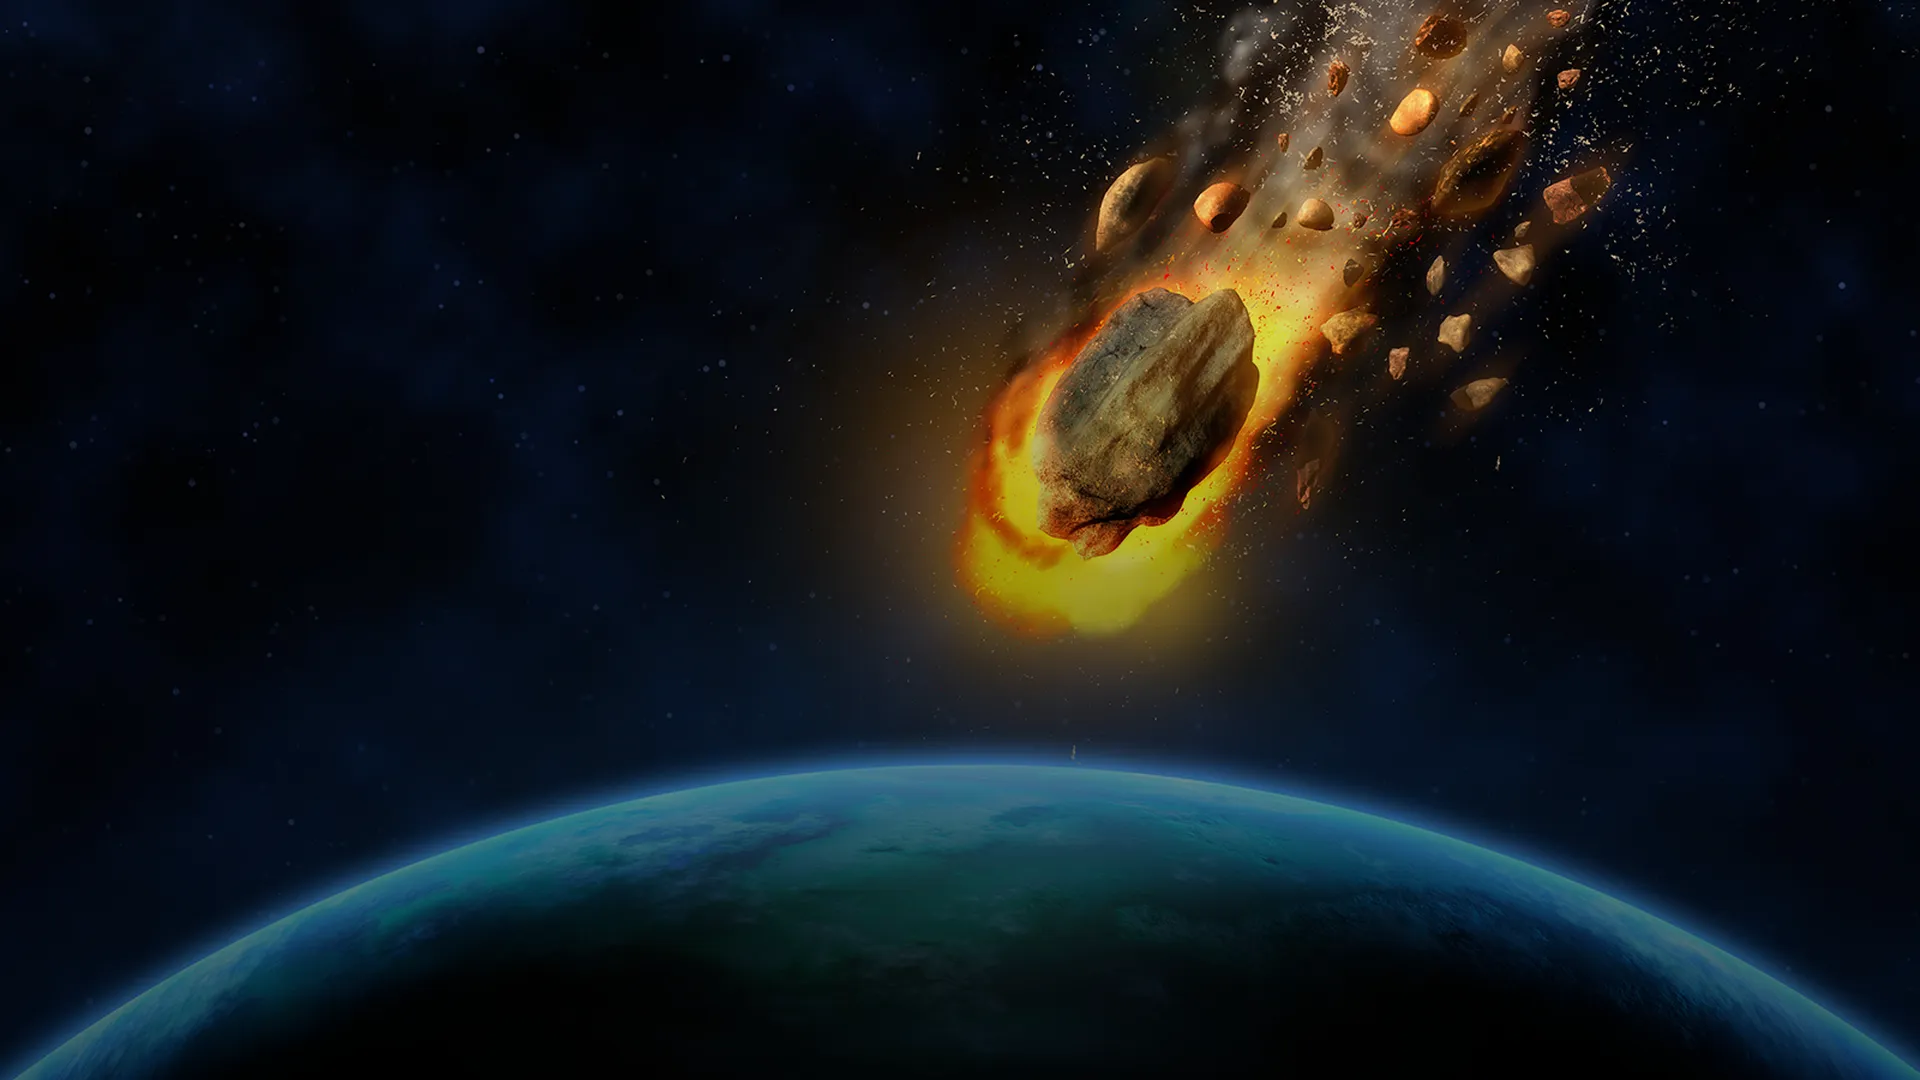 Астероид Апофис пролетит на максимально близком расстоянии от Земли. Наблюдать за ним может быть жизненно важно